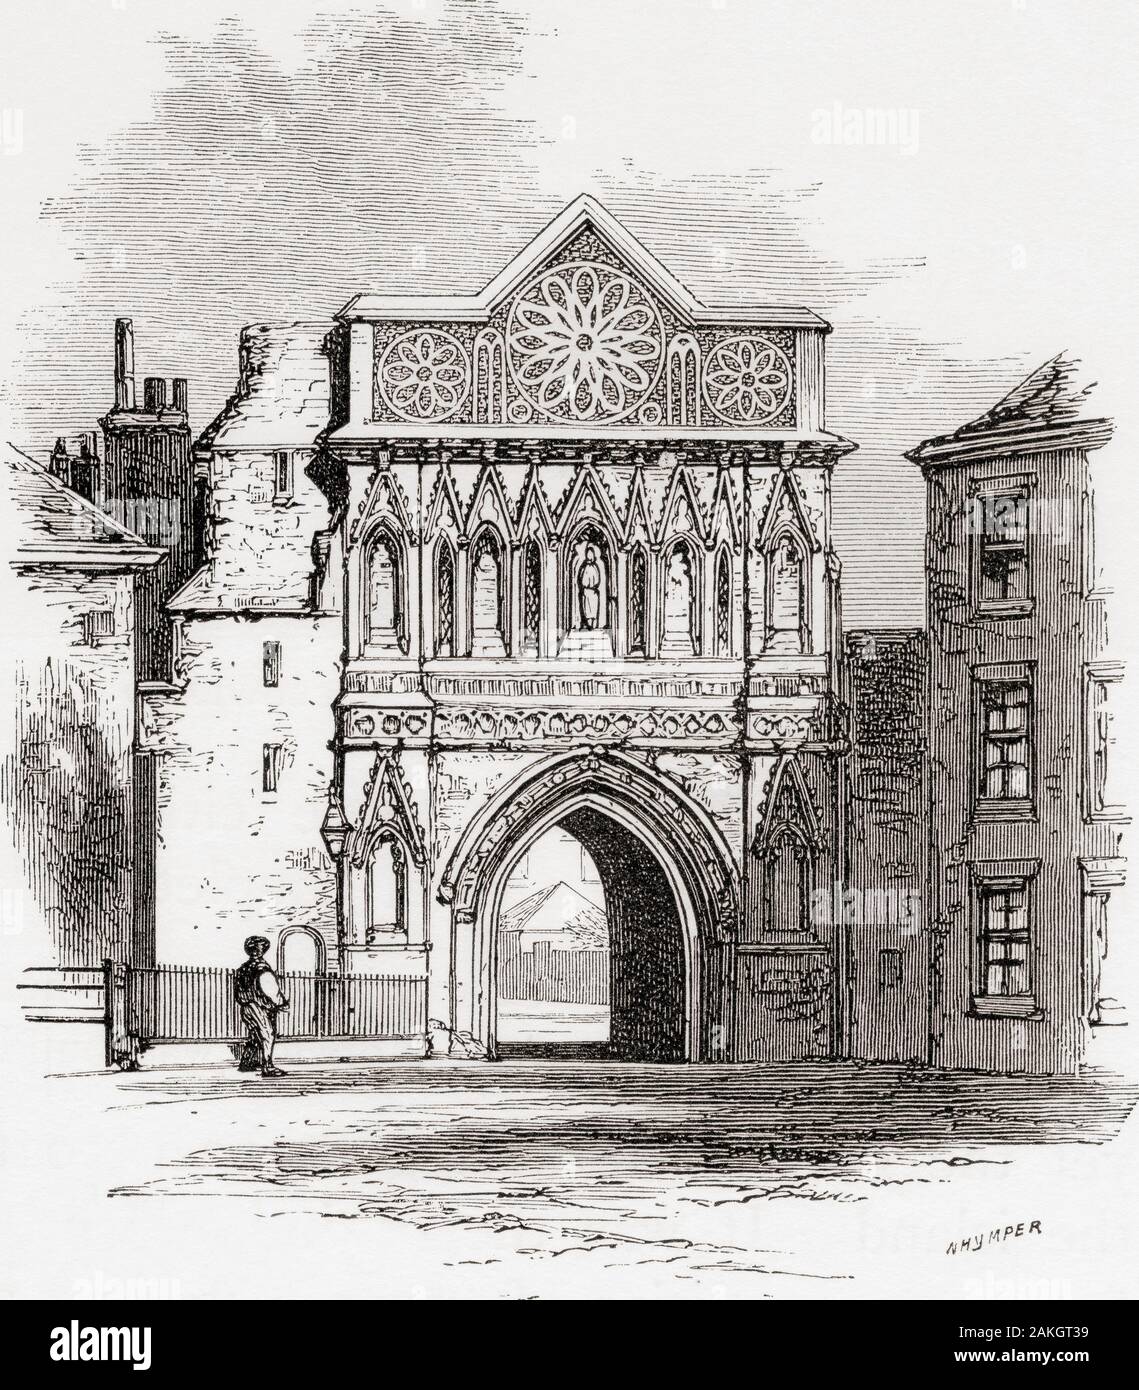 La porte d'Ethelbert, Norwich, Norfolk, Angleterre, vu ici au 19e siècle. Photos de l'anglais, publié en 1890. Banque D'Images